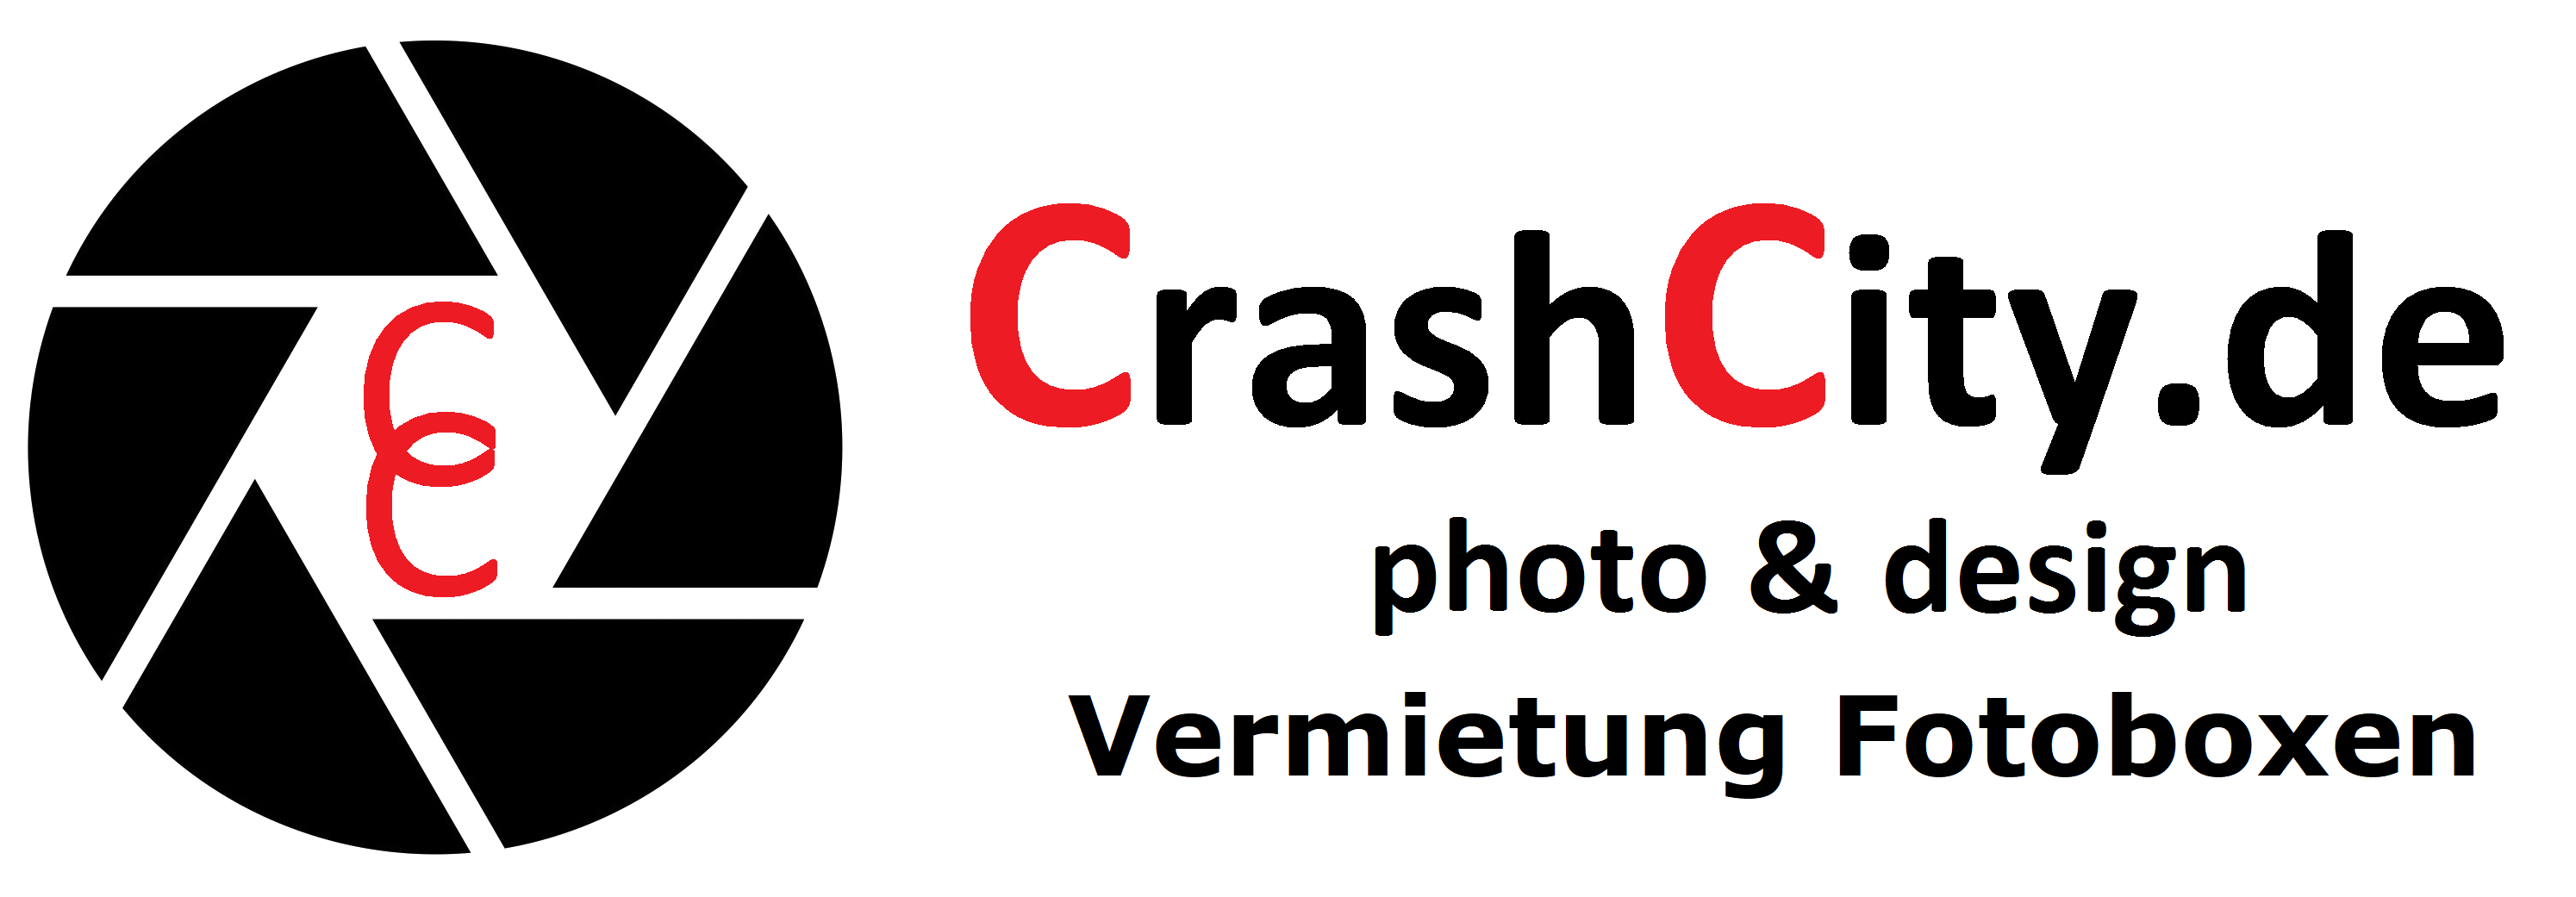 CrashCity.de - Vermietung von Fotoboxen